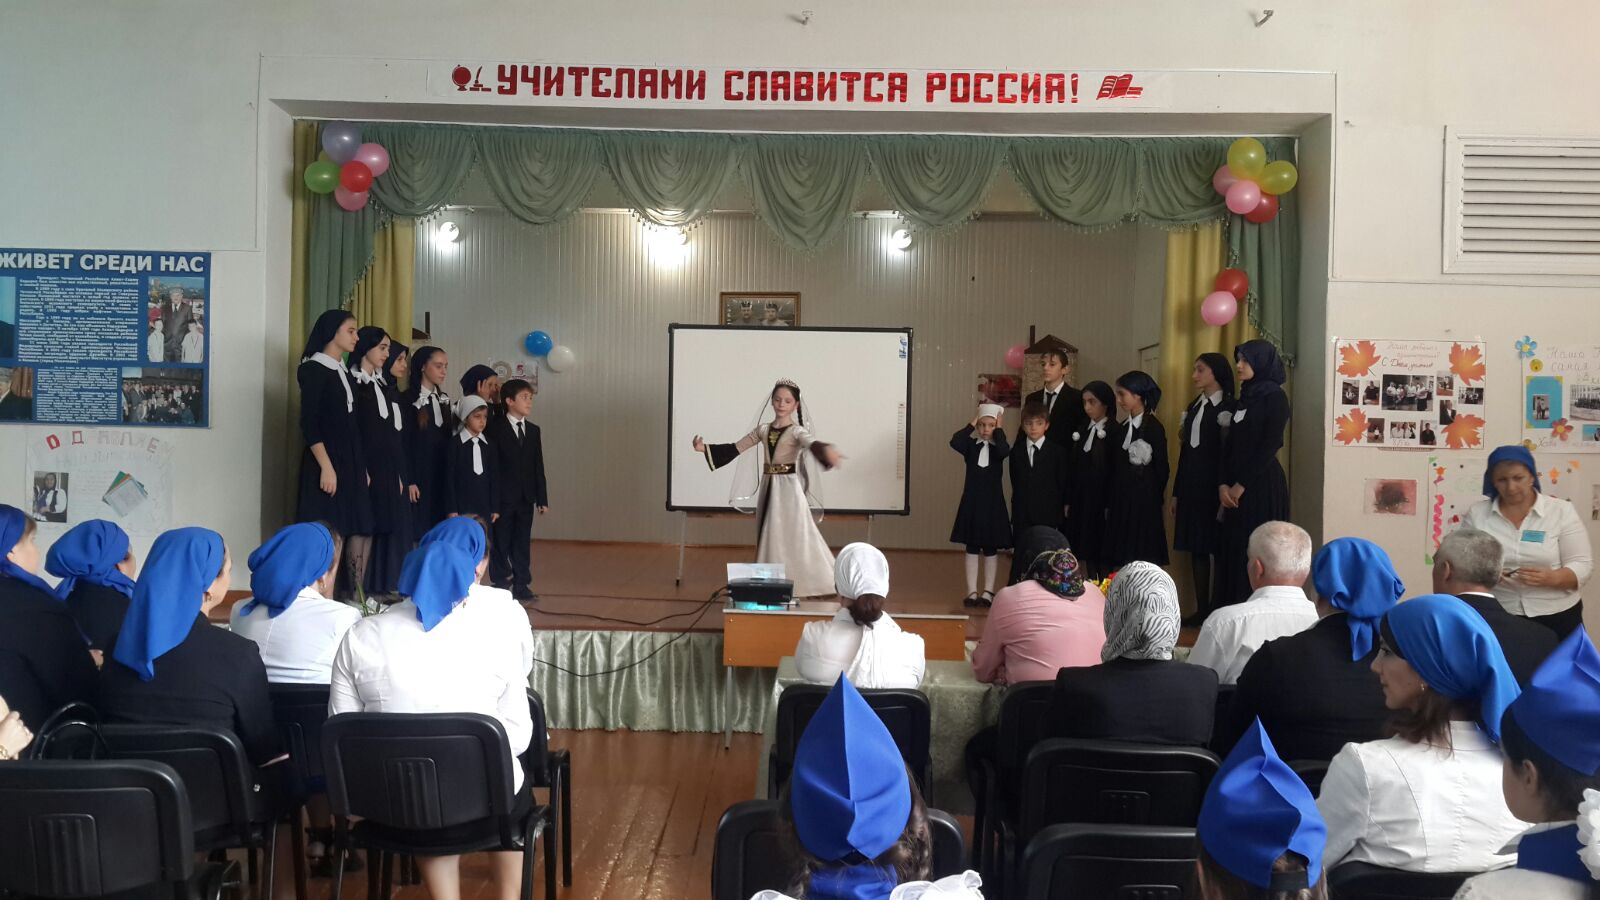 Общешкольное мероприятие Учителями славится Россия